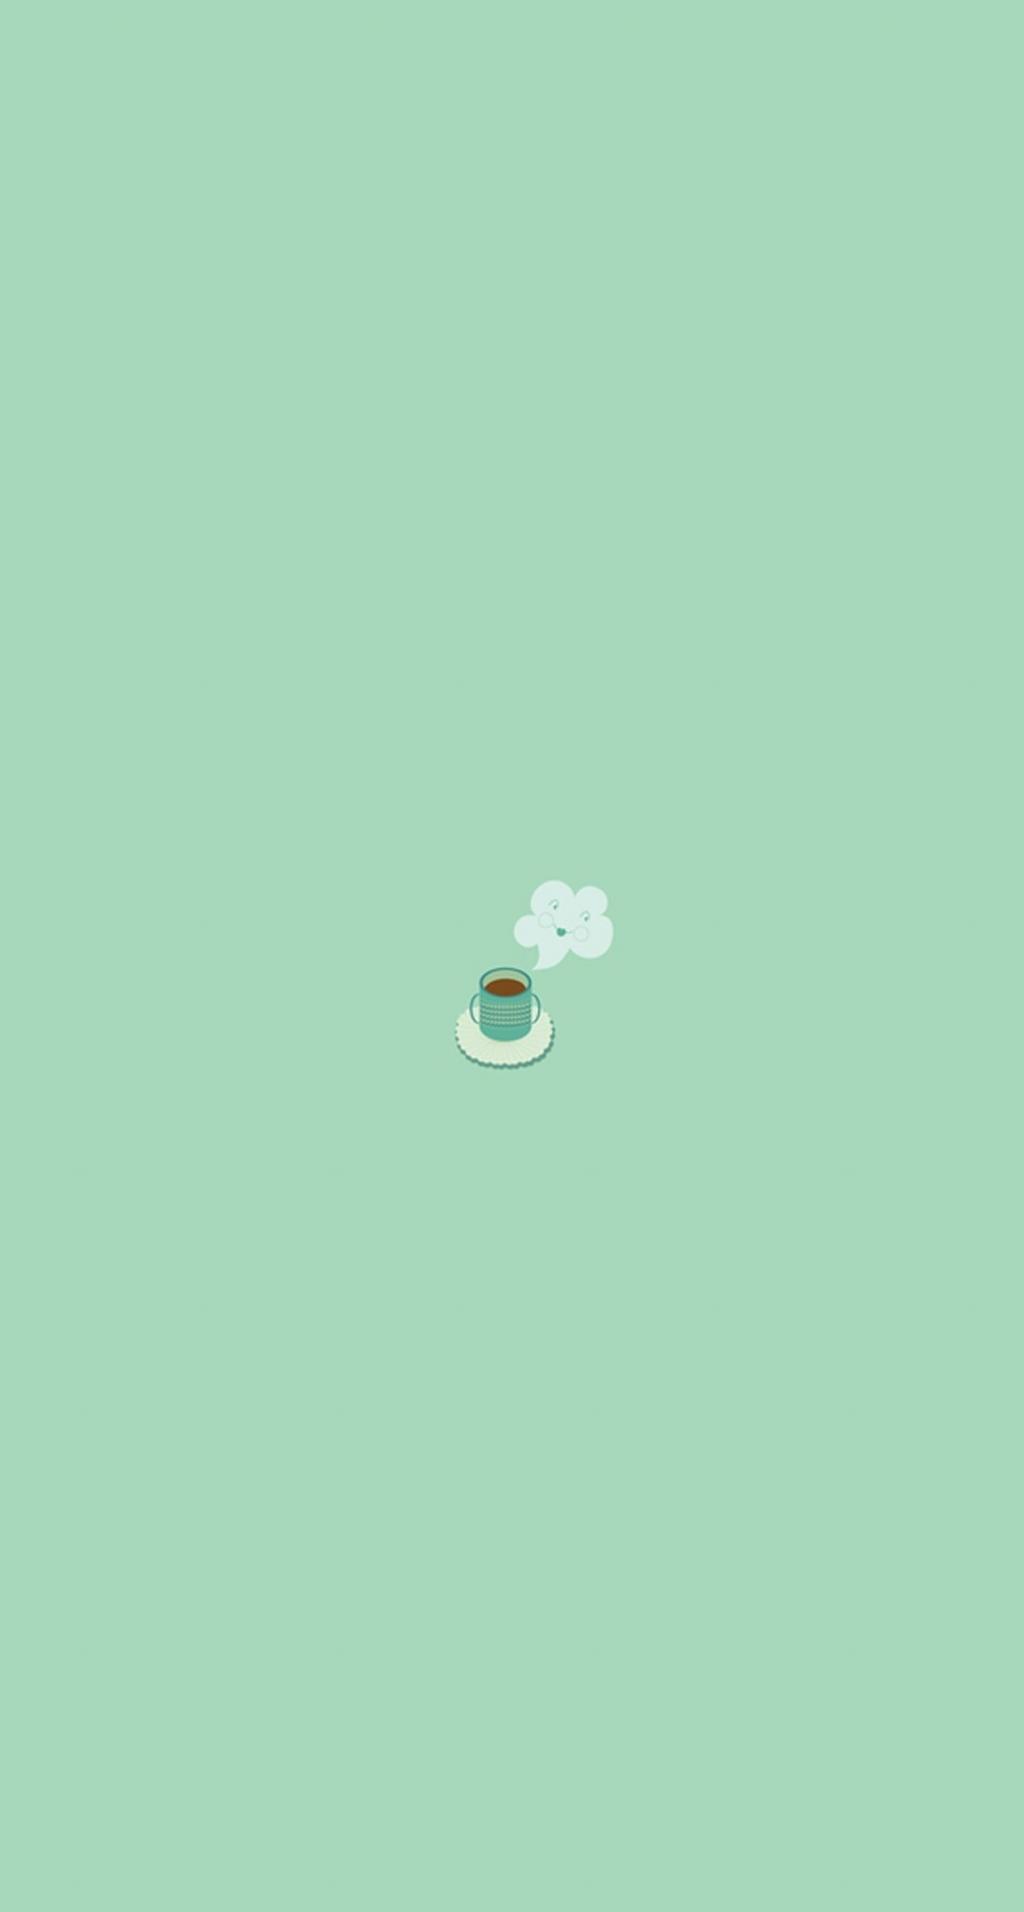 简单的咖啡杯平插图iPhone 6 Plus高清壁纸